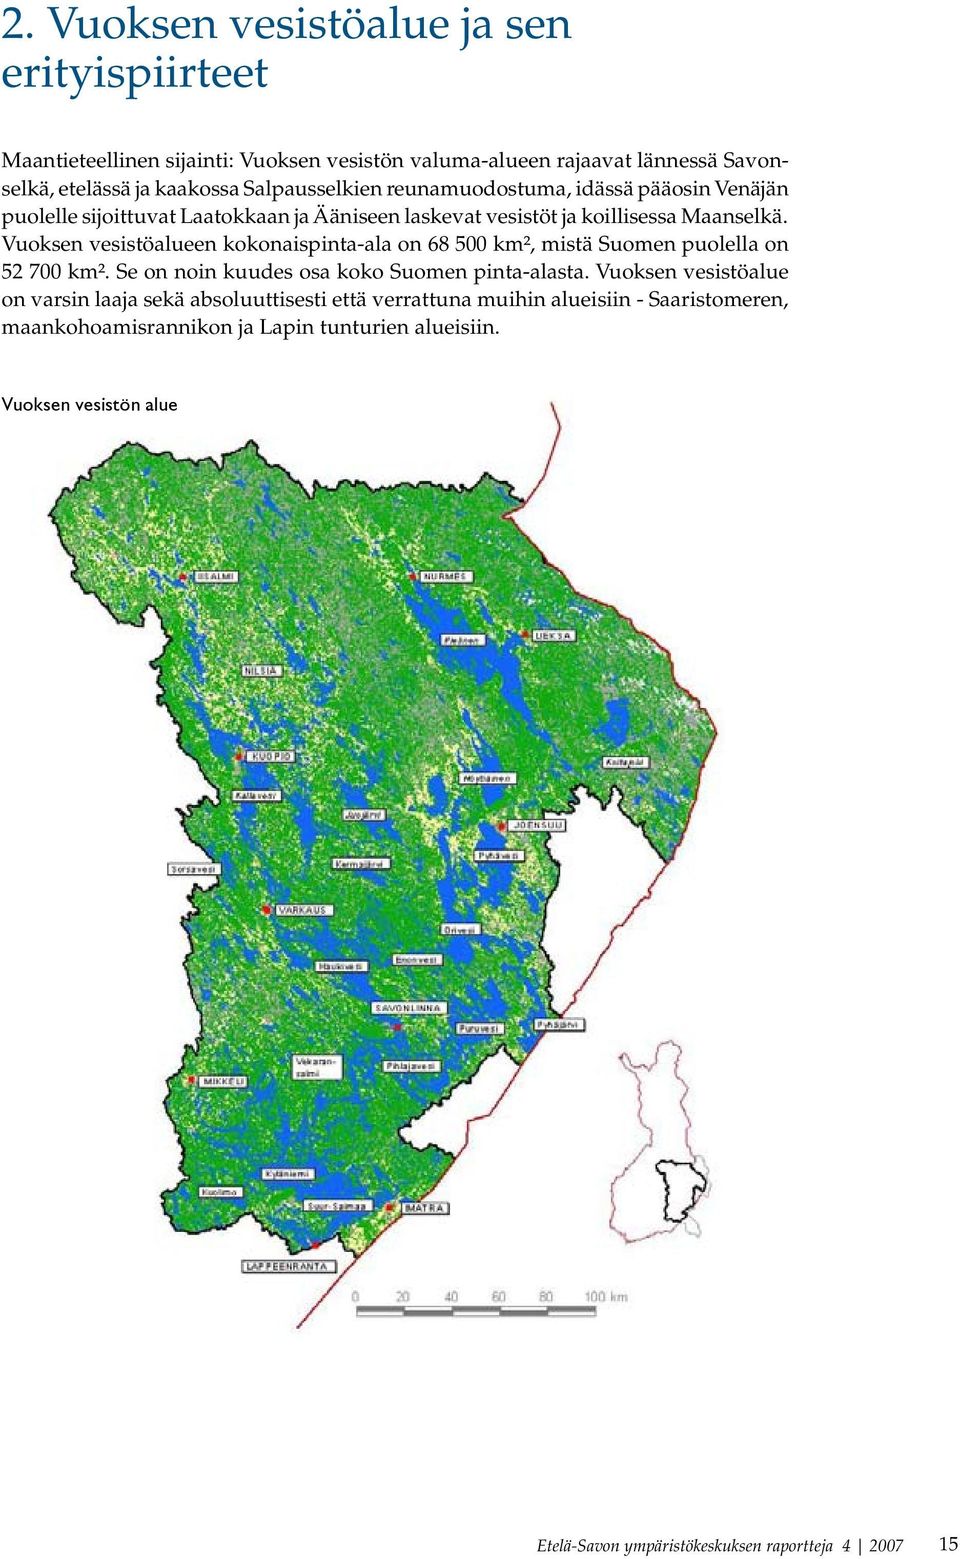 Vuoksen vesistöalueen kokonaispinta-ala on 68 500 km², mistä Suomen puolella on 52 700 km². Se on noin kuudes osa koko Suomen pinta-alasta.